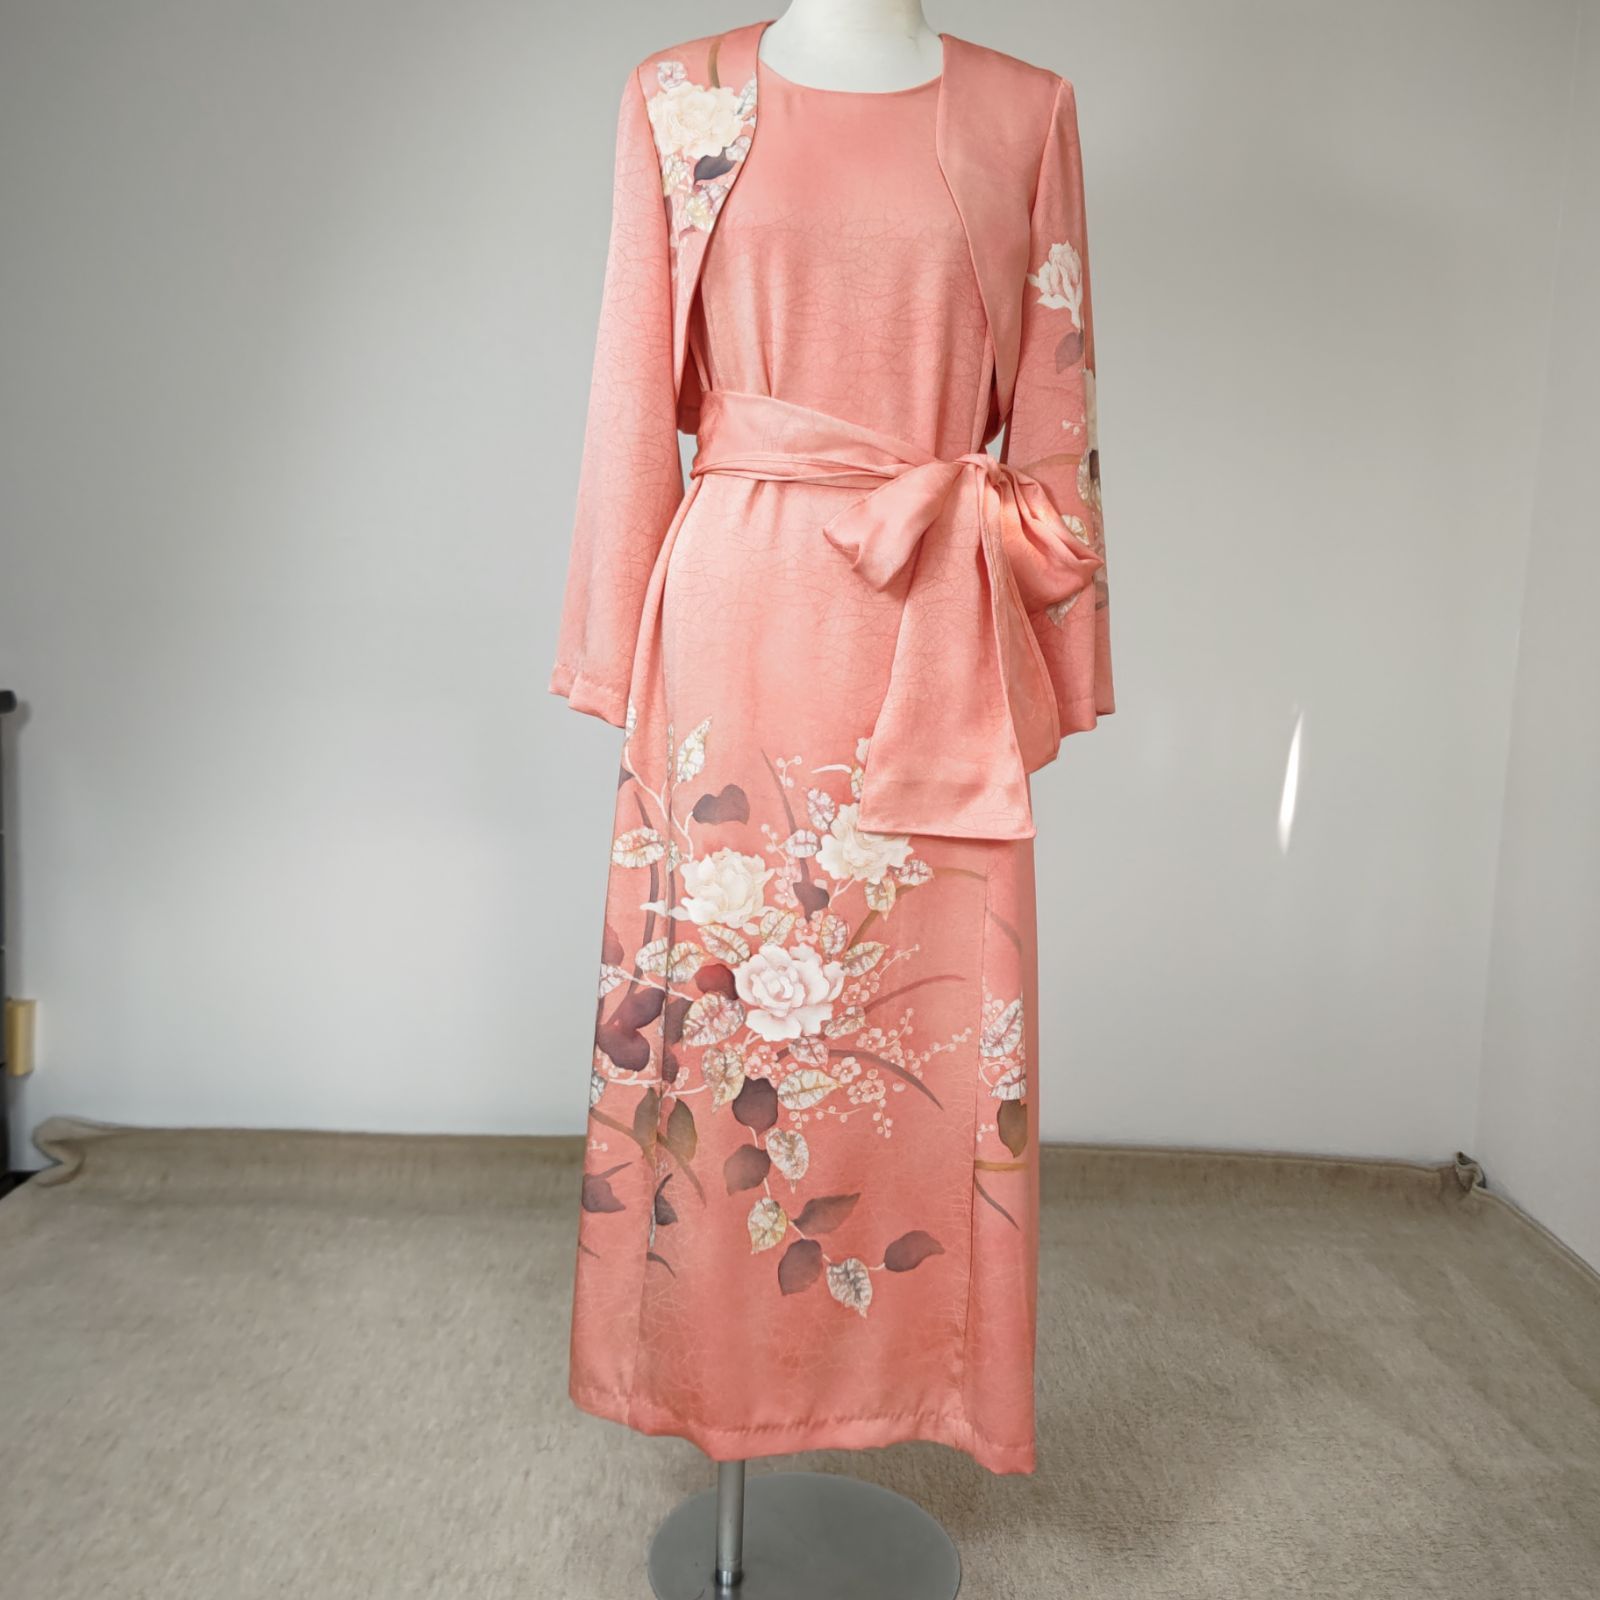 zunezune 訪問着ドレス 7分袖 着物リメイクワンピース 淡いピンクコンサート衣装